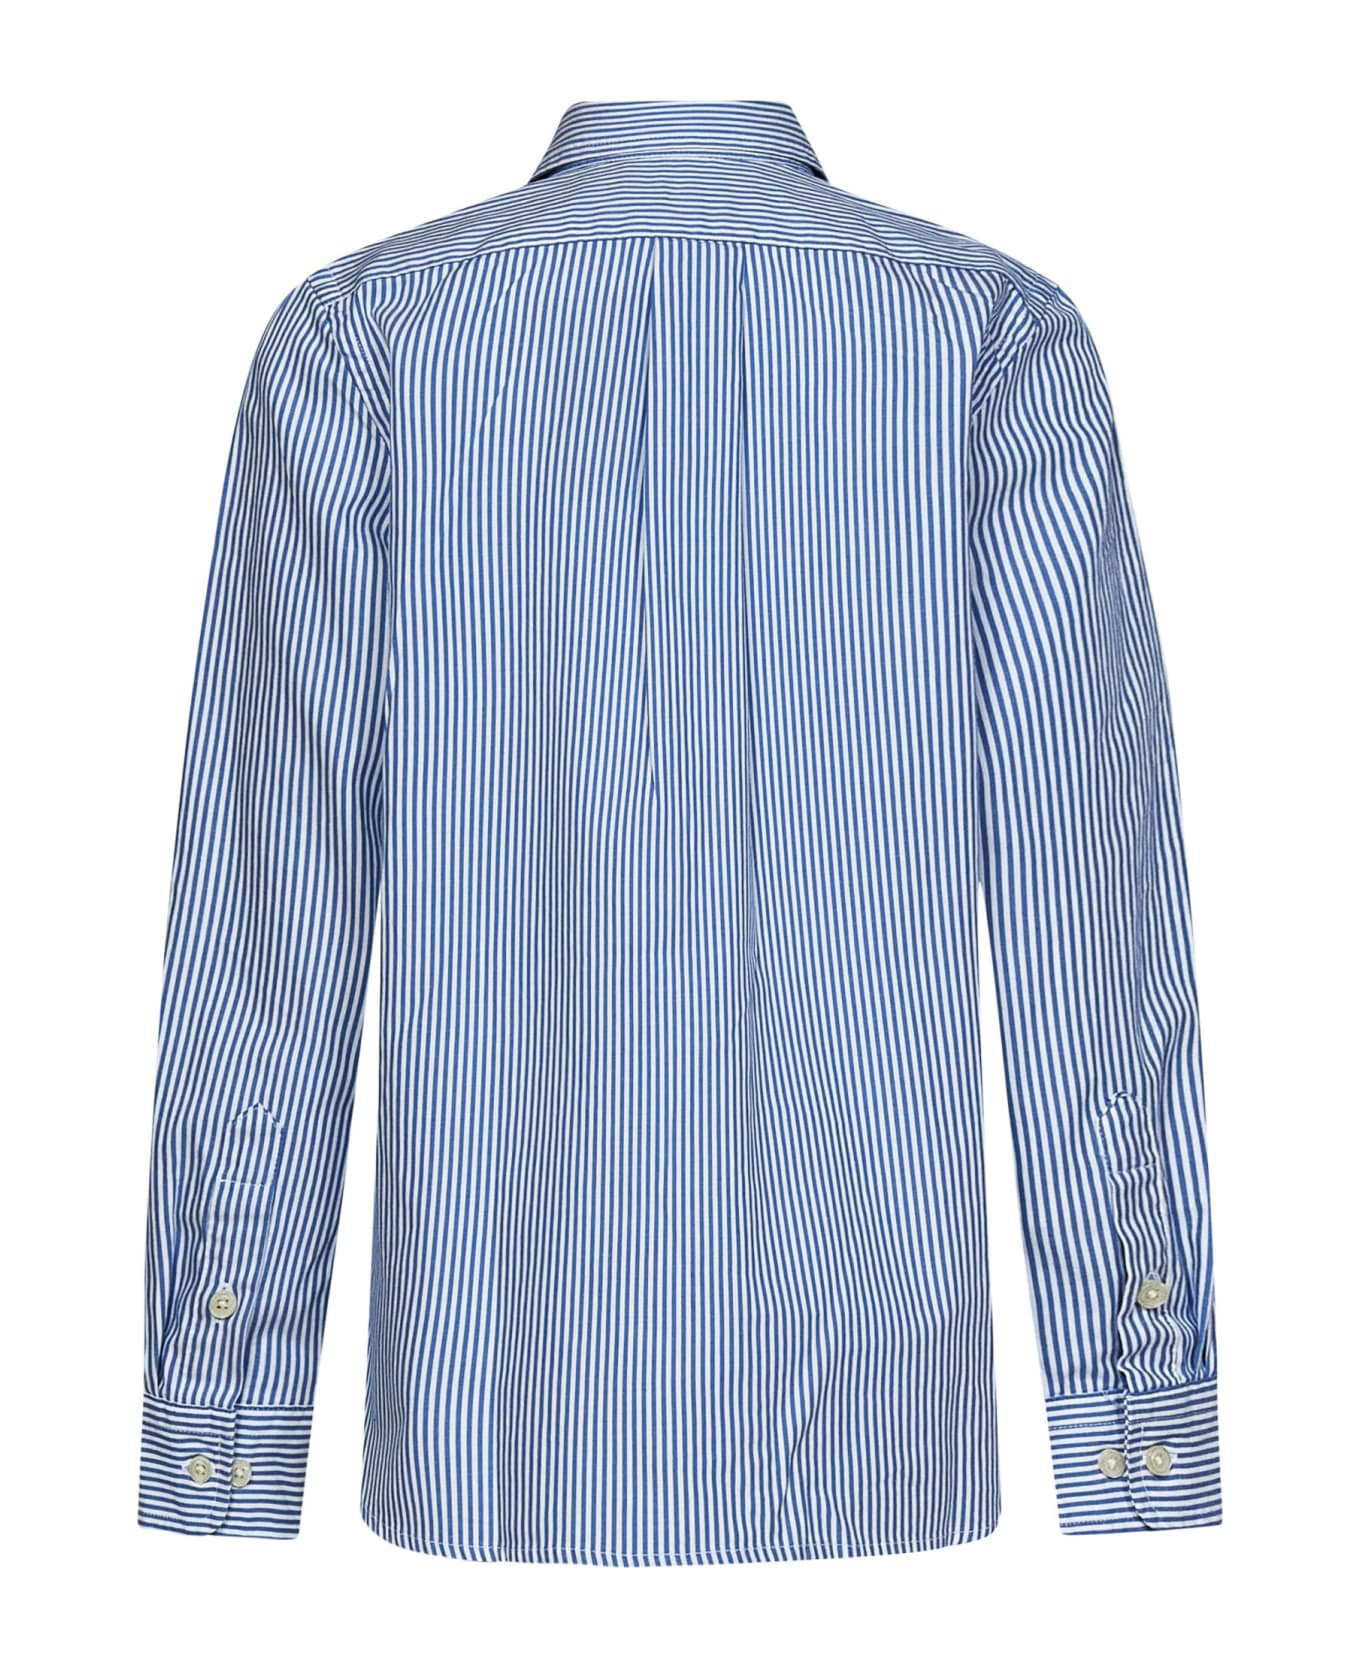 Polo Ralph Lauren Shirt - Blu e Bianco